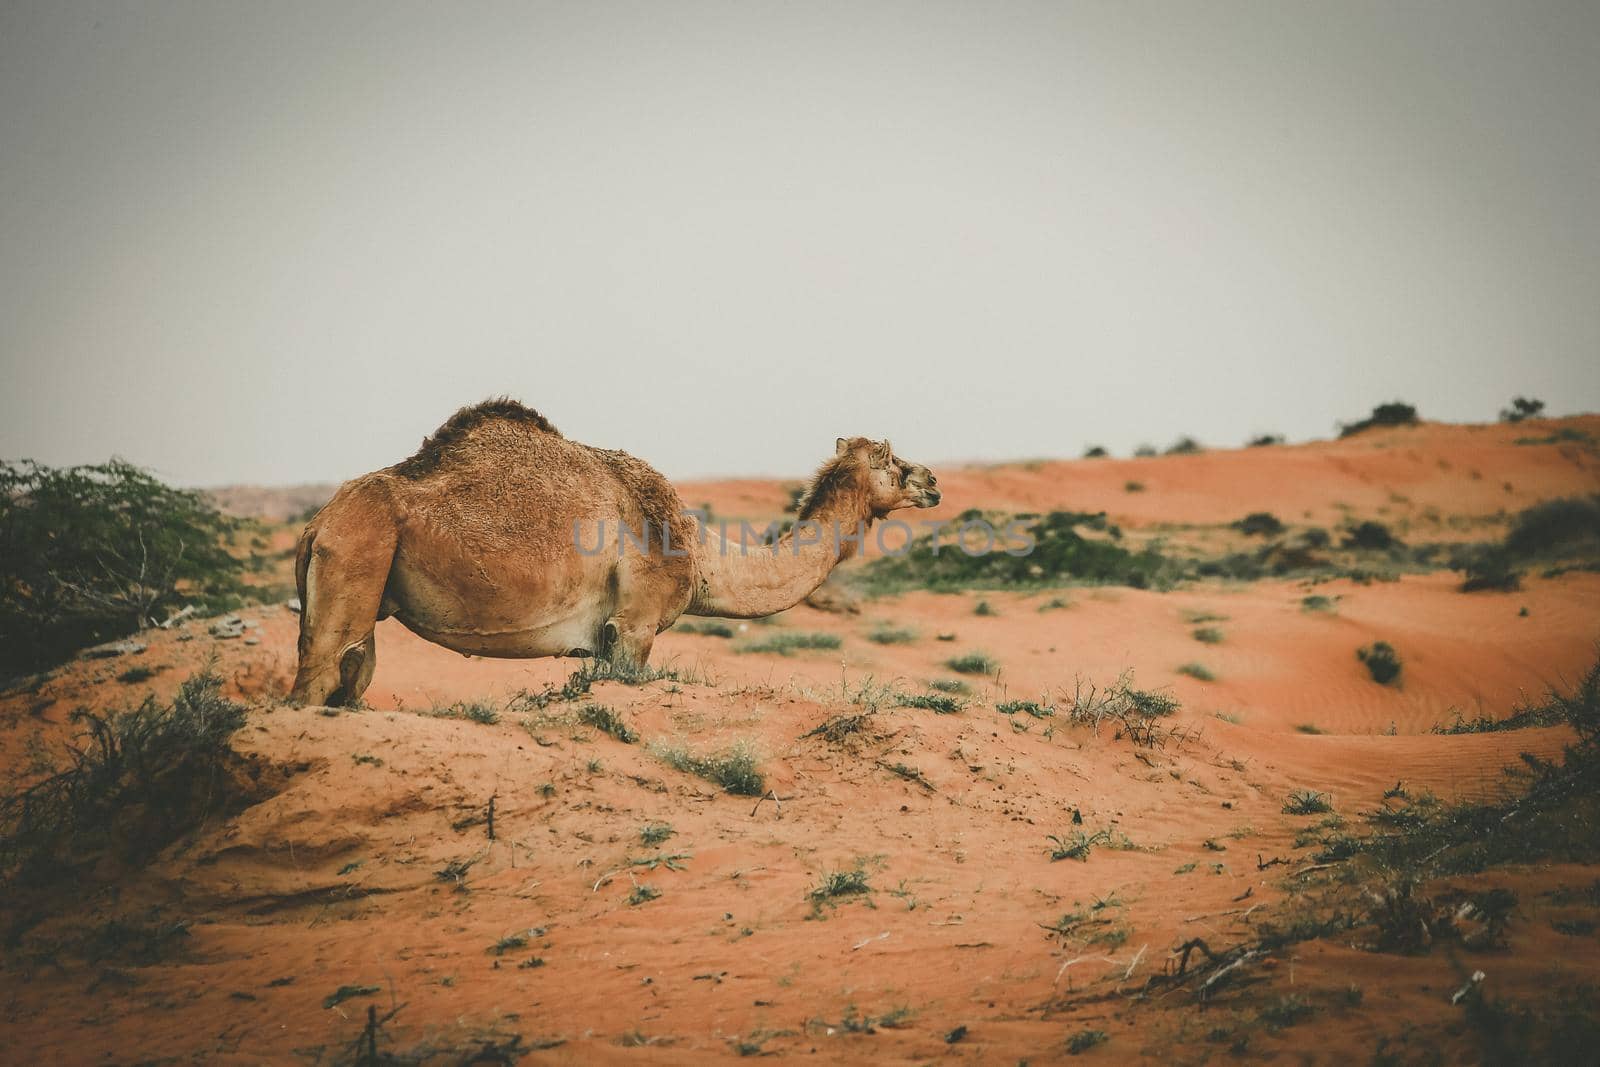 Camel in the Desert, Ras al Khaimah (Ra’s al-Chaima), Vereinigte Arabische Emirate, Asien  by Weltblick